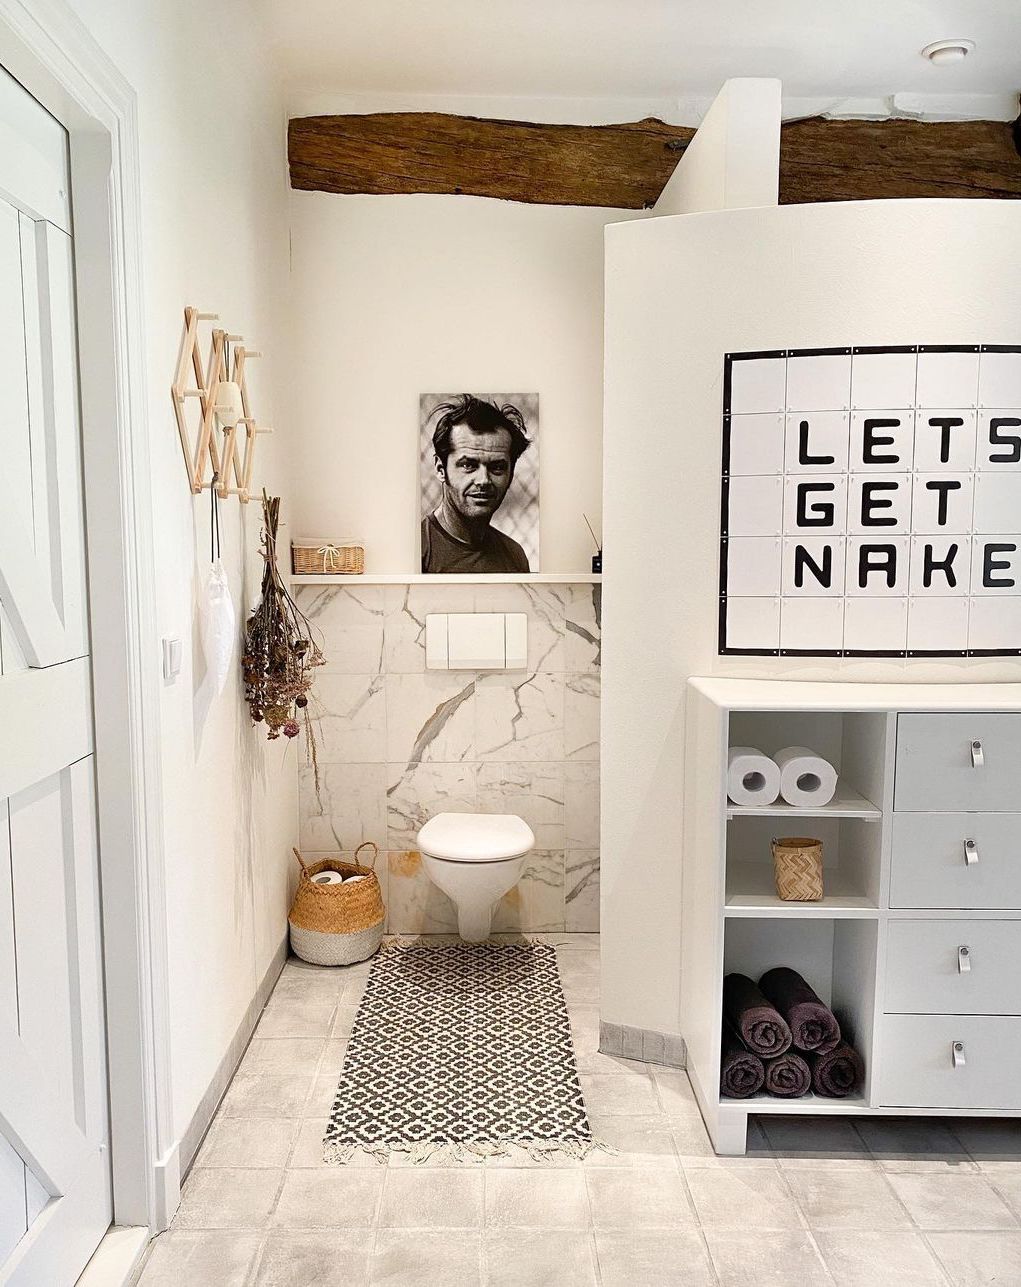 21 Modern Scandinavian Bathroom Decor Ideas